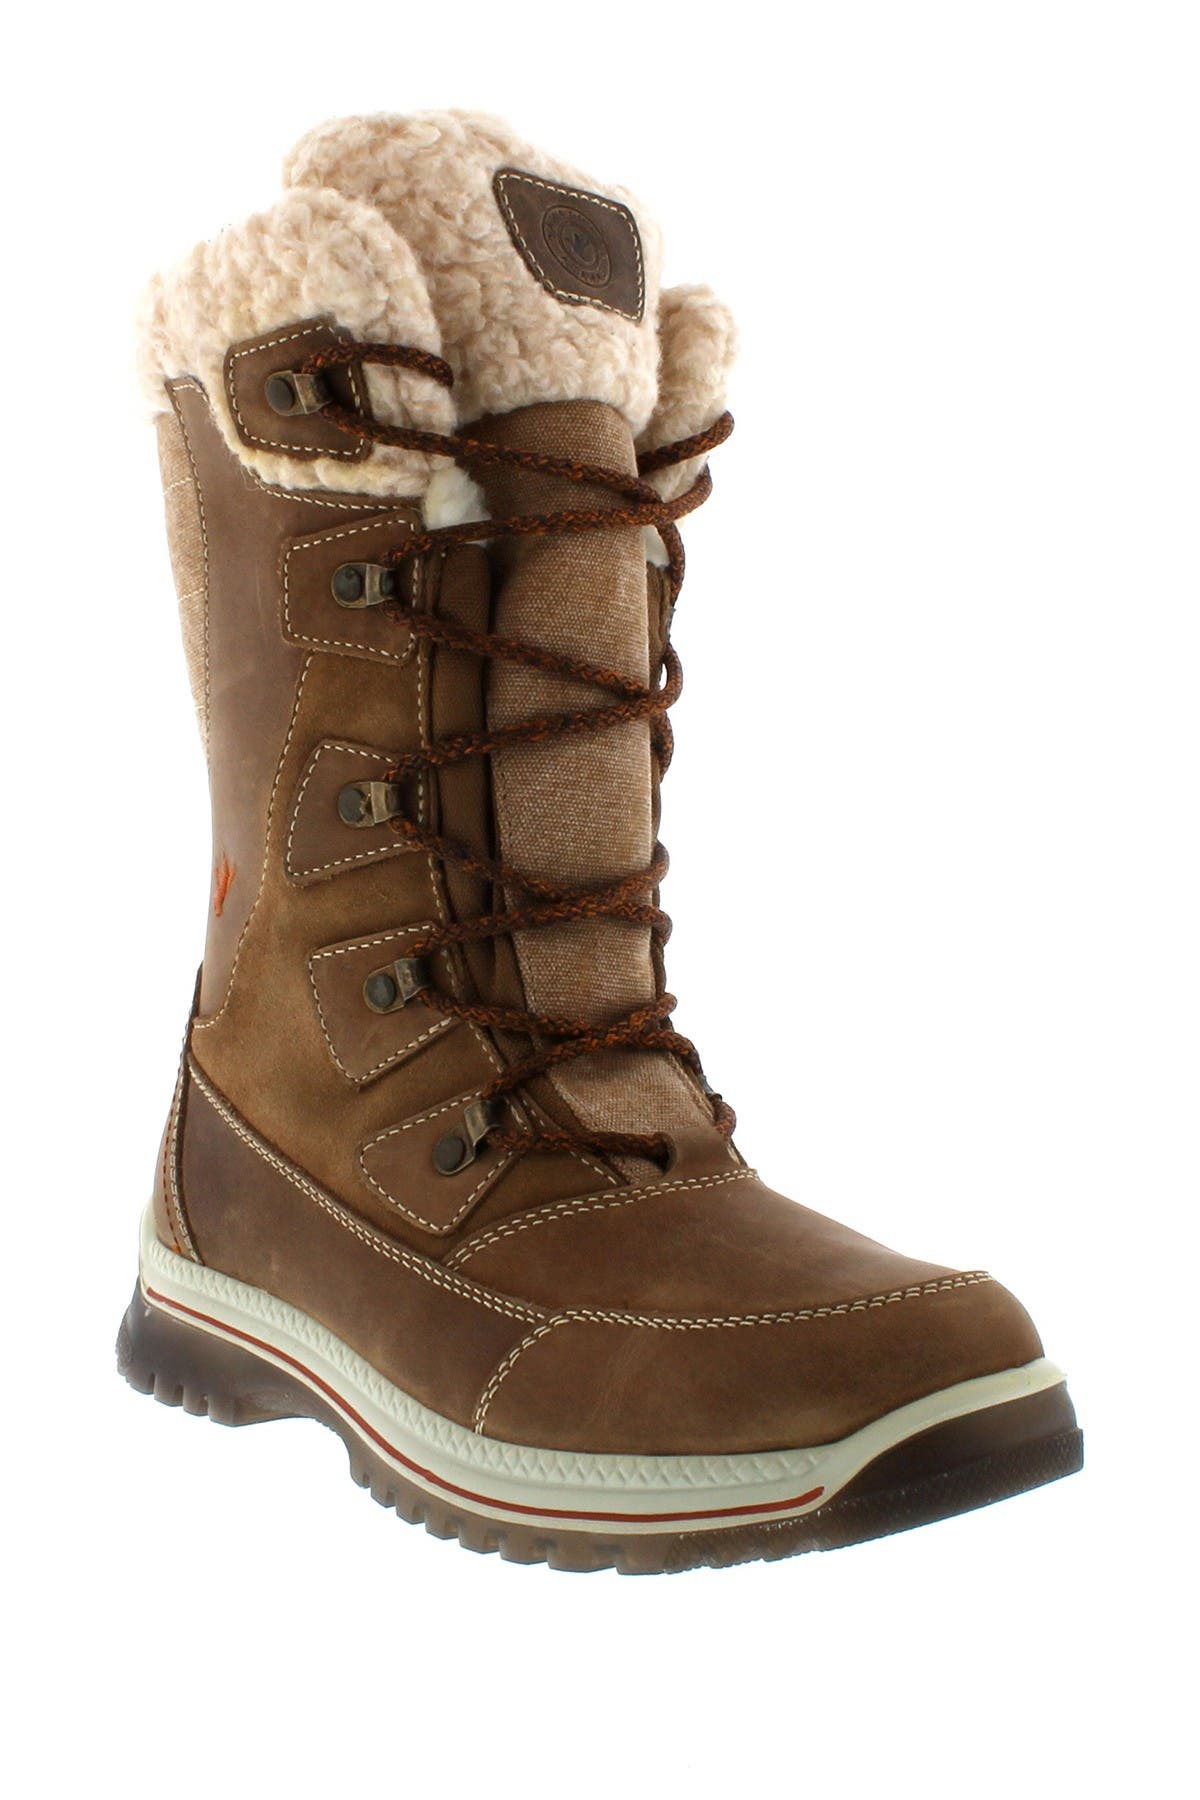 waterproof wool lined boots